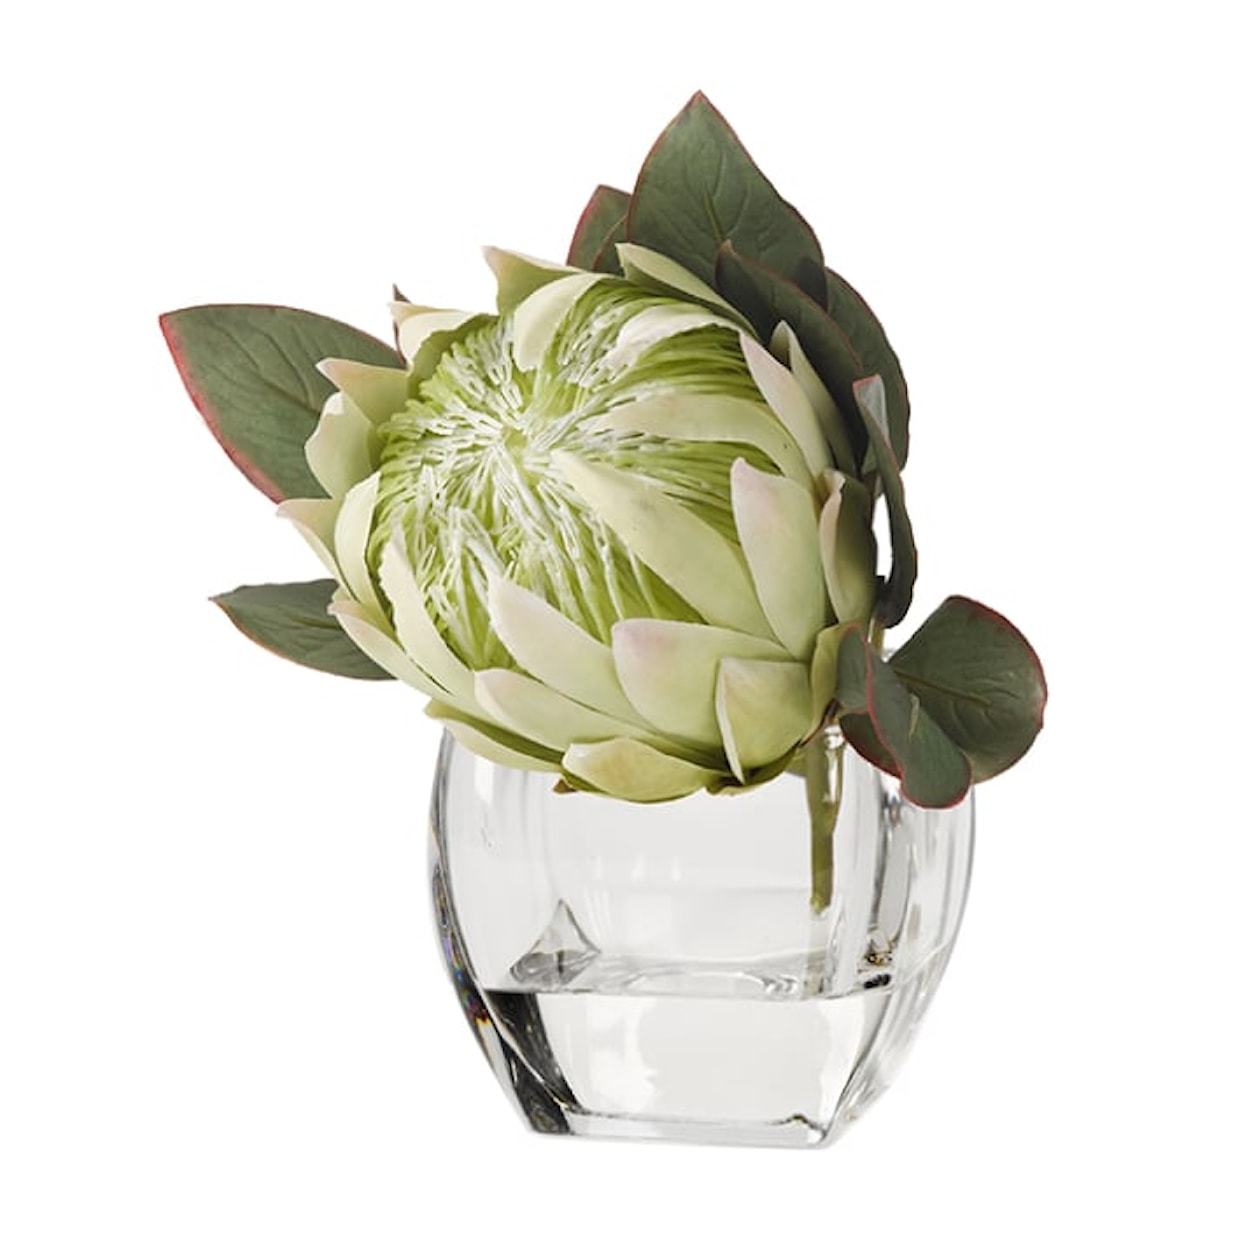 D&W Silks Accessories White Green Protea in Glass Cube